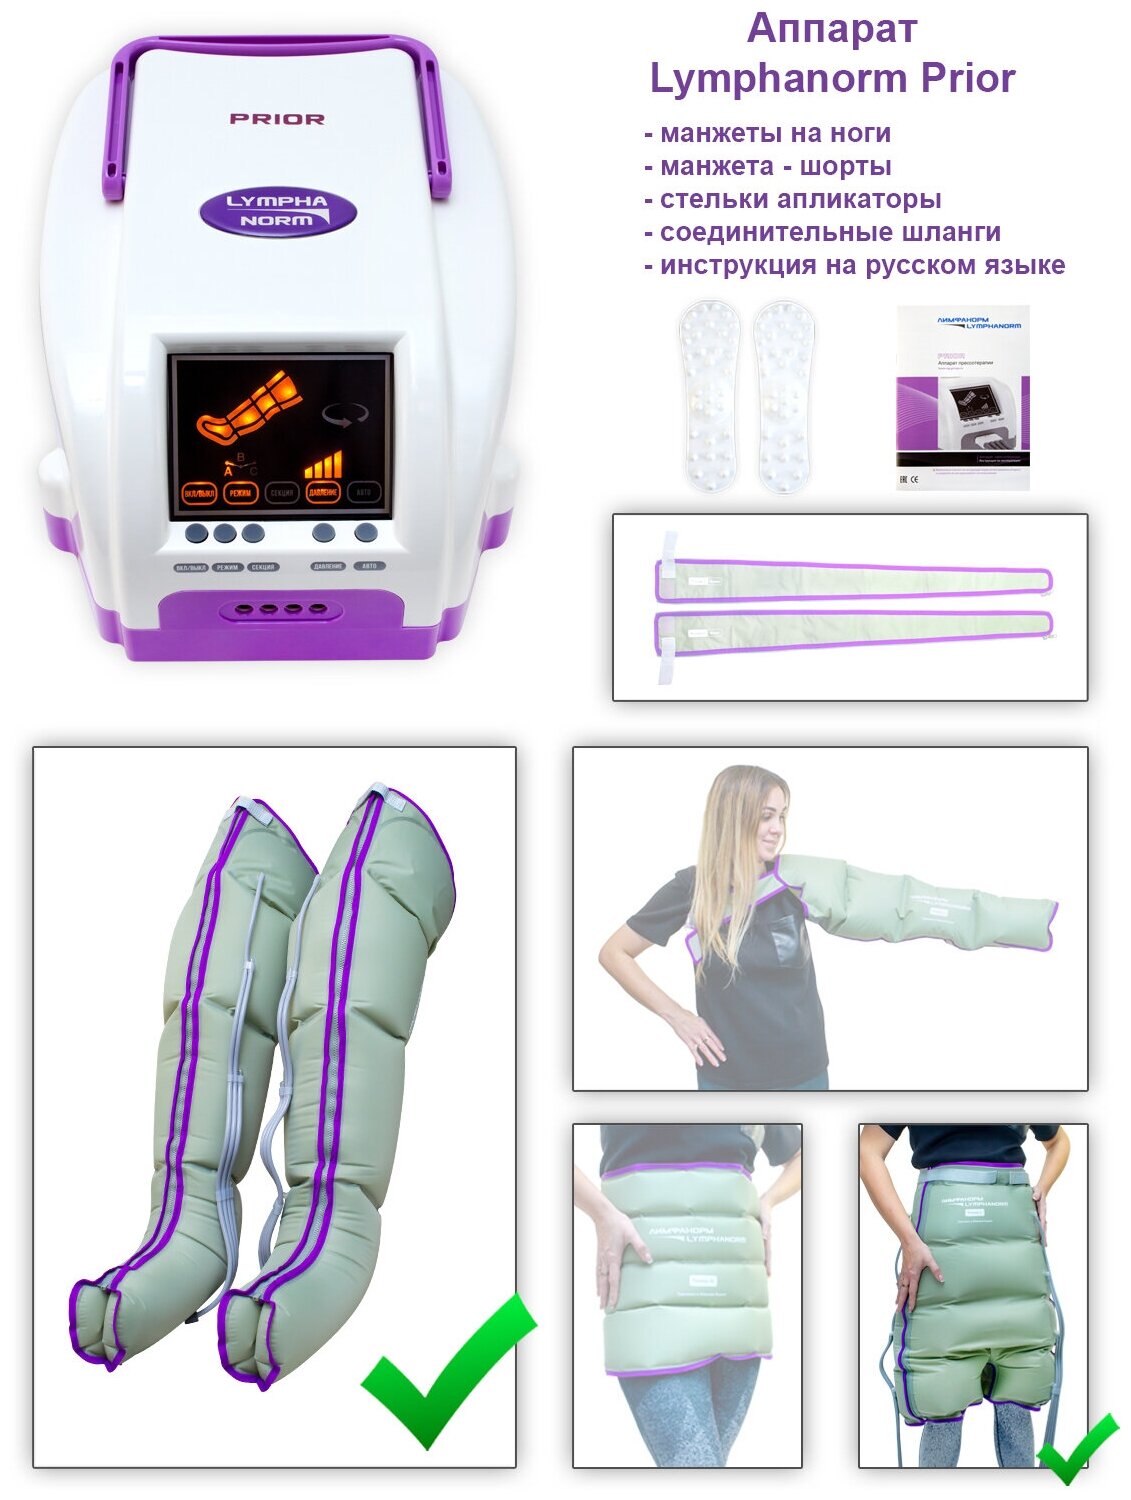 Аппарат для лимфодренажа и прессотерапии LymphaNorm PRIOR (размер XL) + манжета-шорты